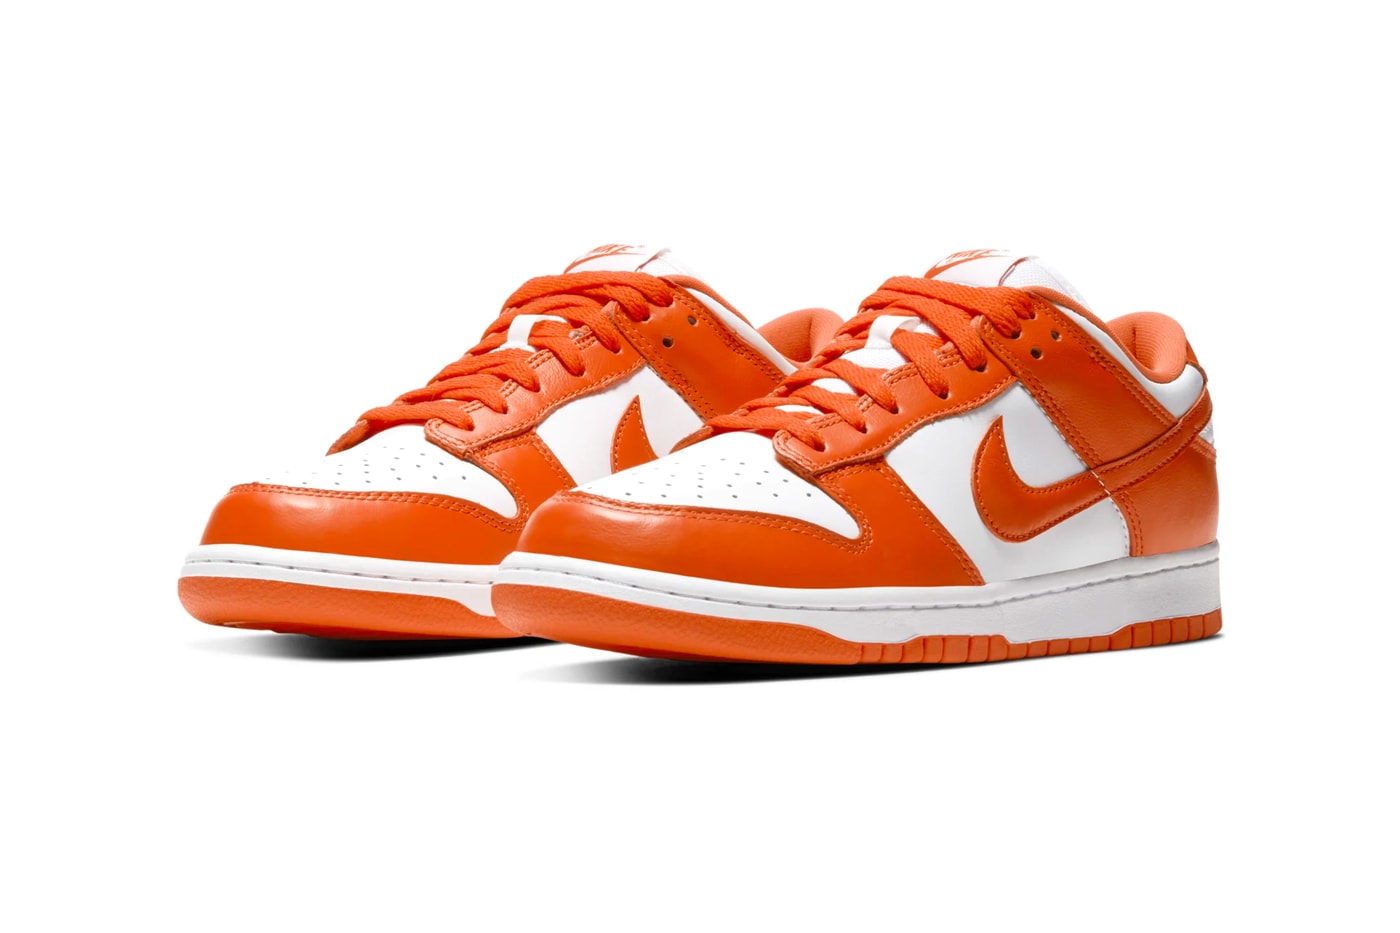 Nike Dunk Low Varsity Royal u0026 Orange Blaze Release Info | Hypebeast